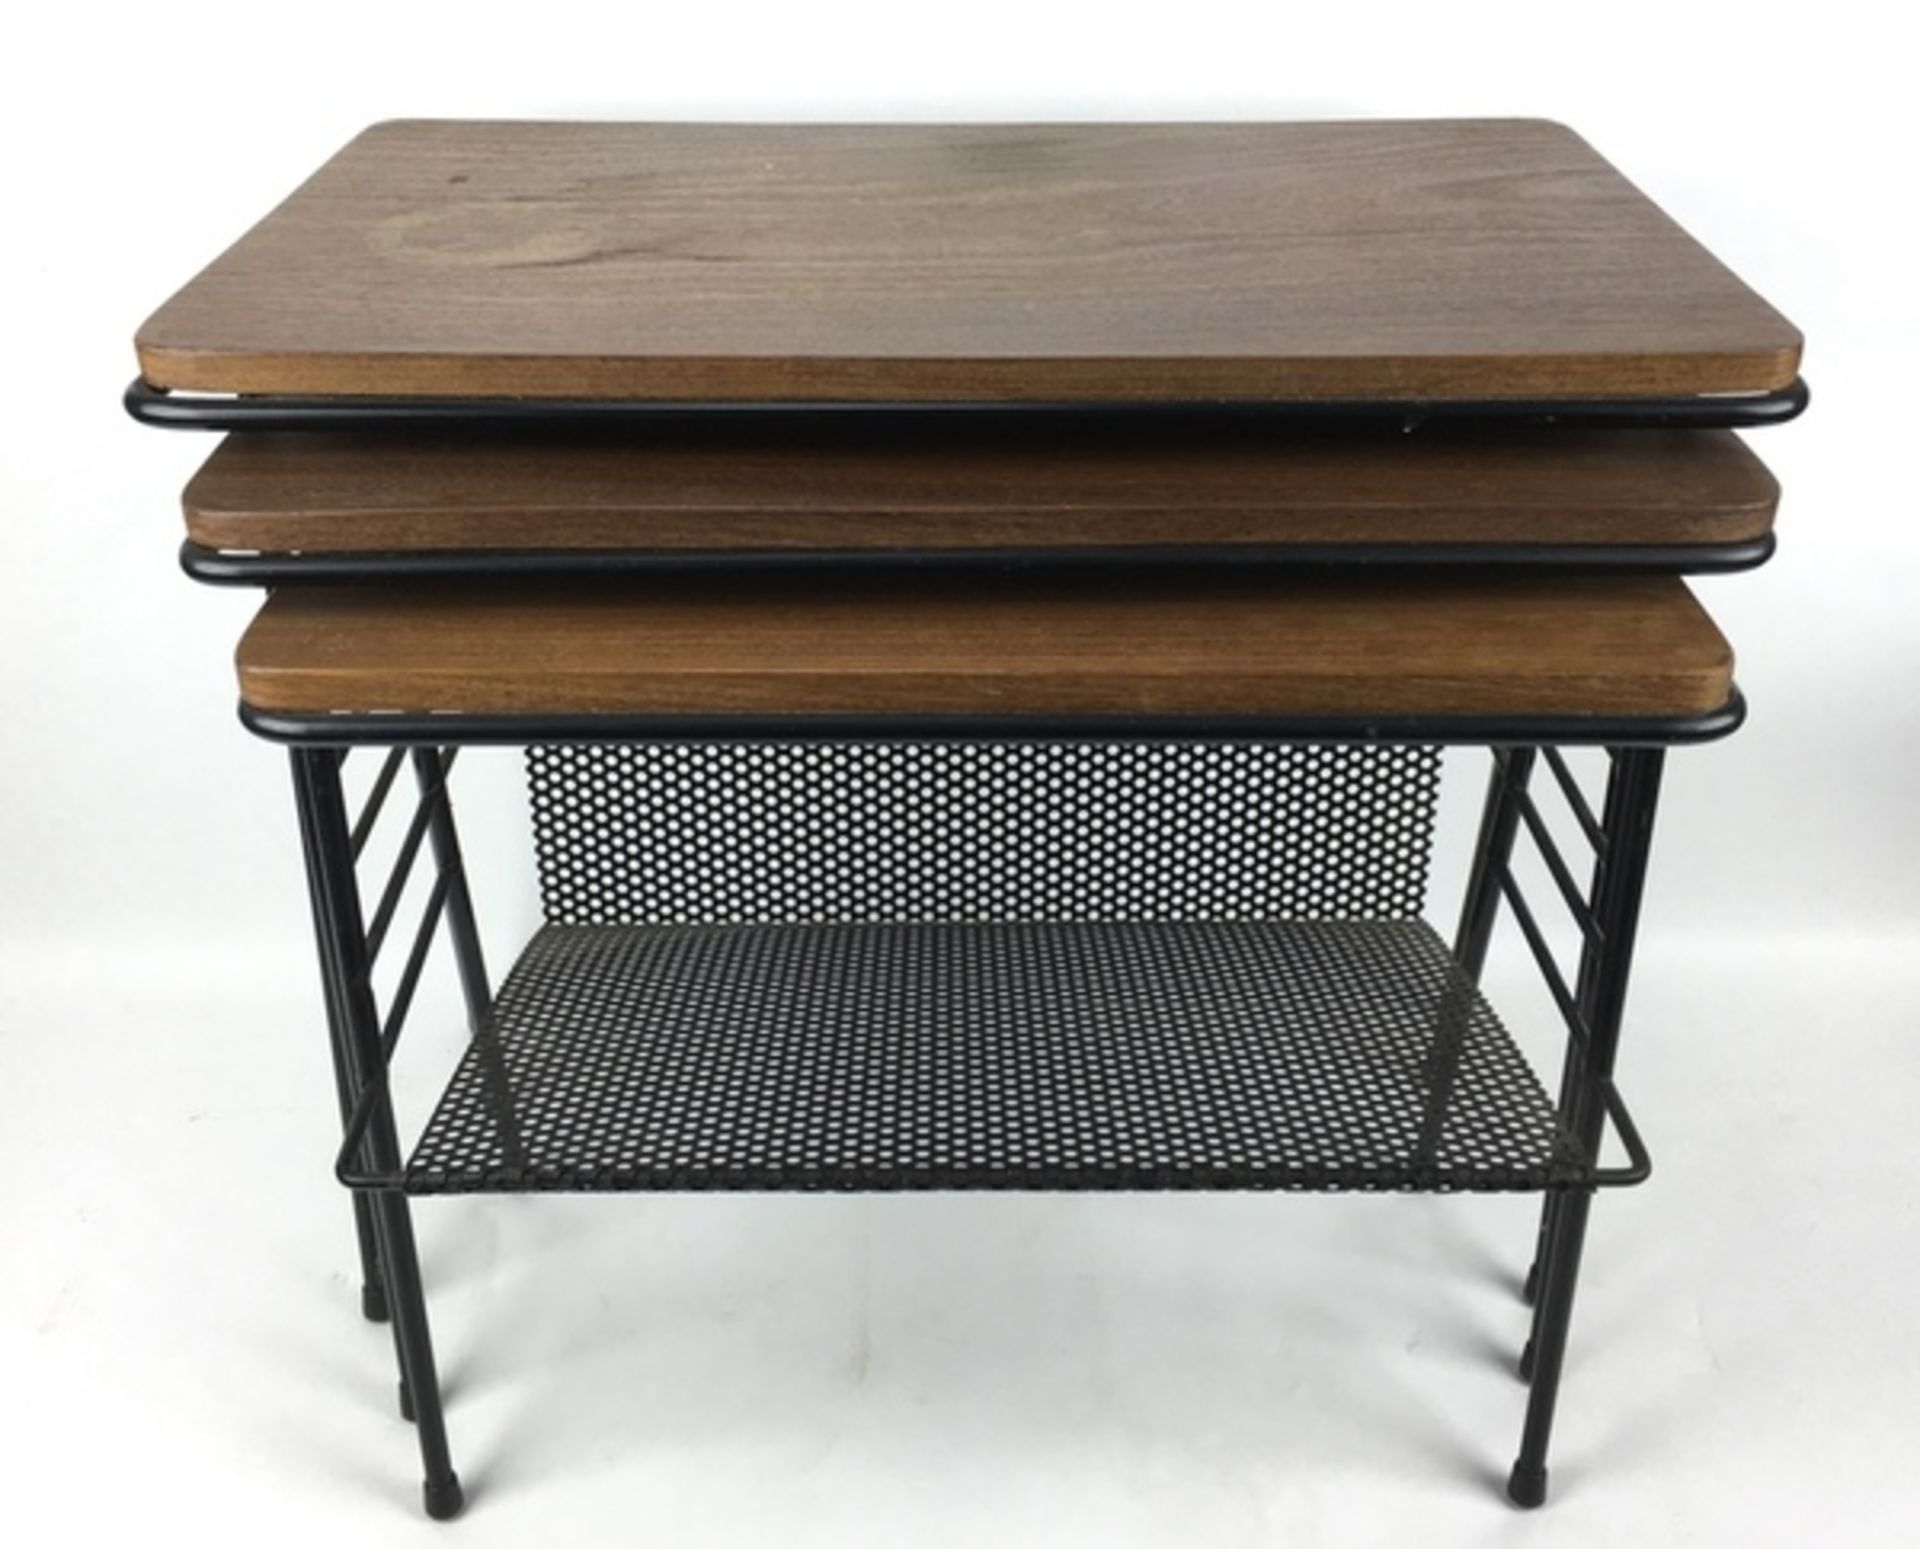 (Design) BijzettafelsSet van drie nestende bijzettafels, draad met hout. Kleinste tafel met gep - Bild 3 aus 3